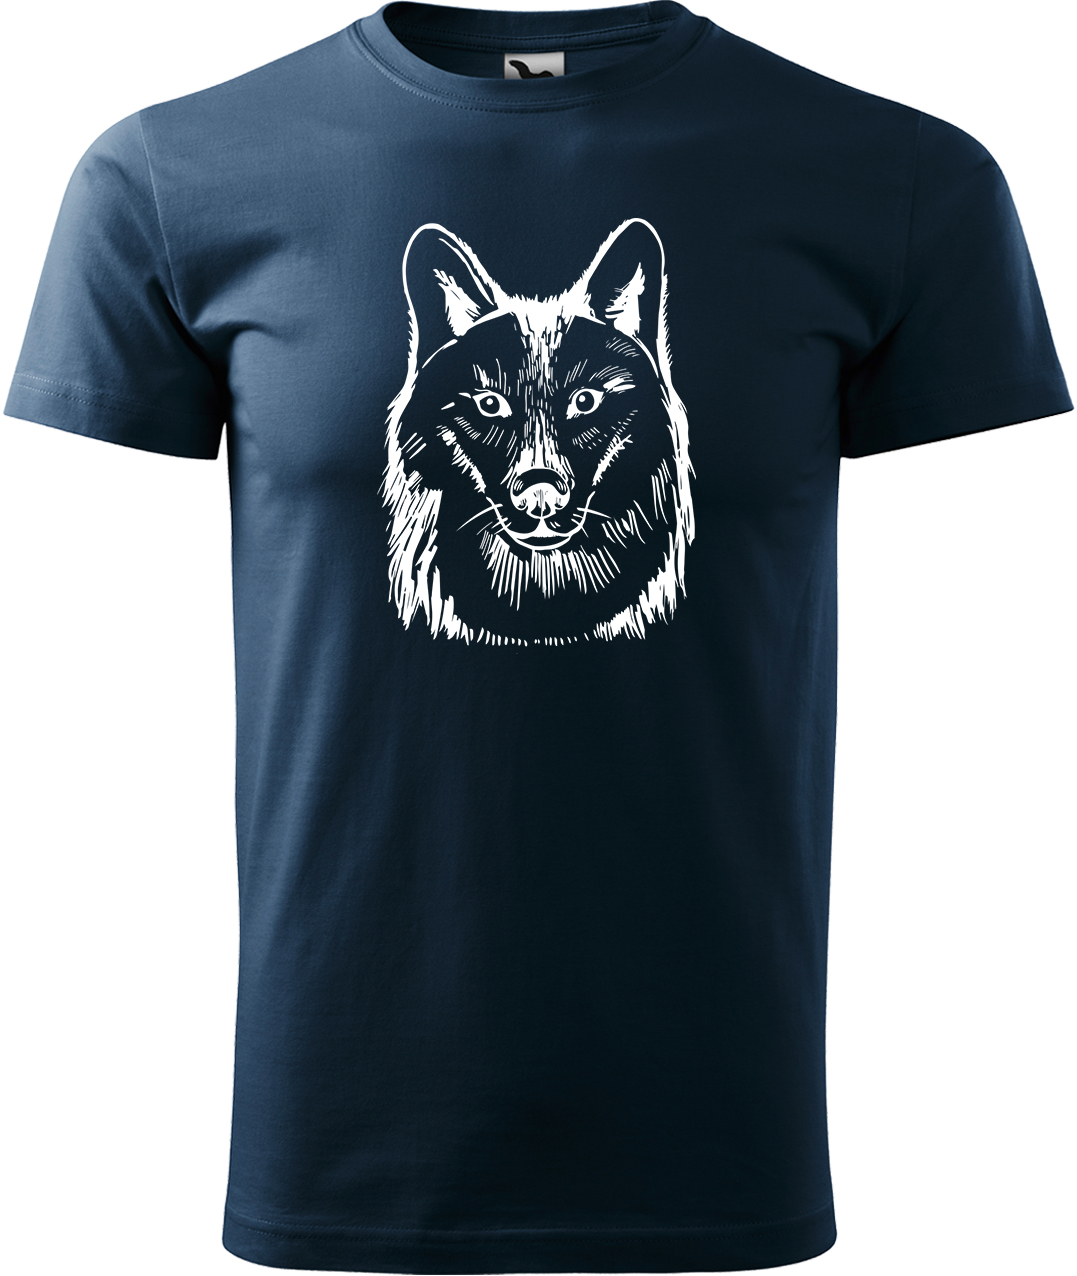 Pánské tričko s vlkem - Kresba vlka Velikost: 3XL, Barva: Námořní modrá (02), Střih: pánský